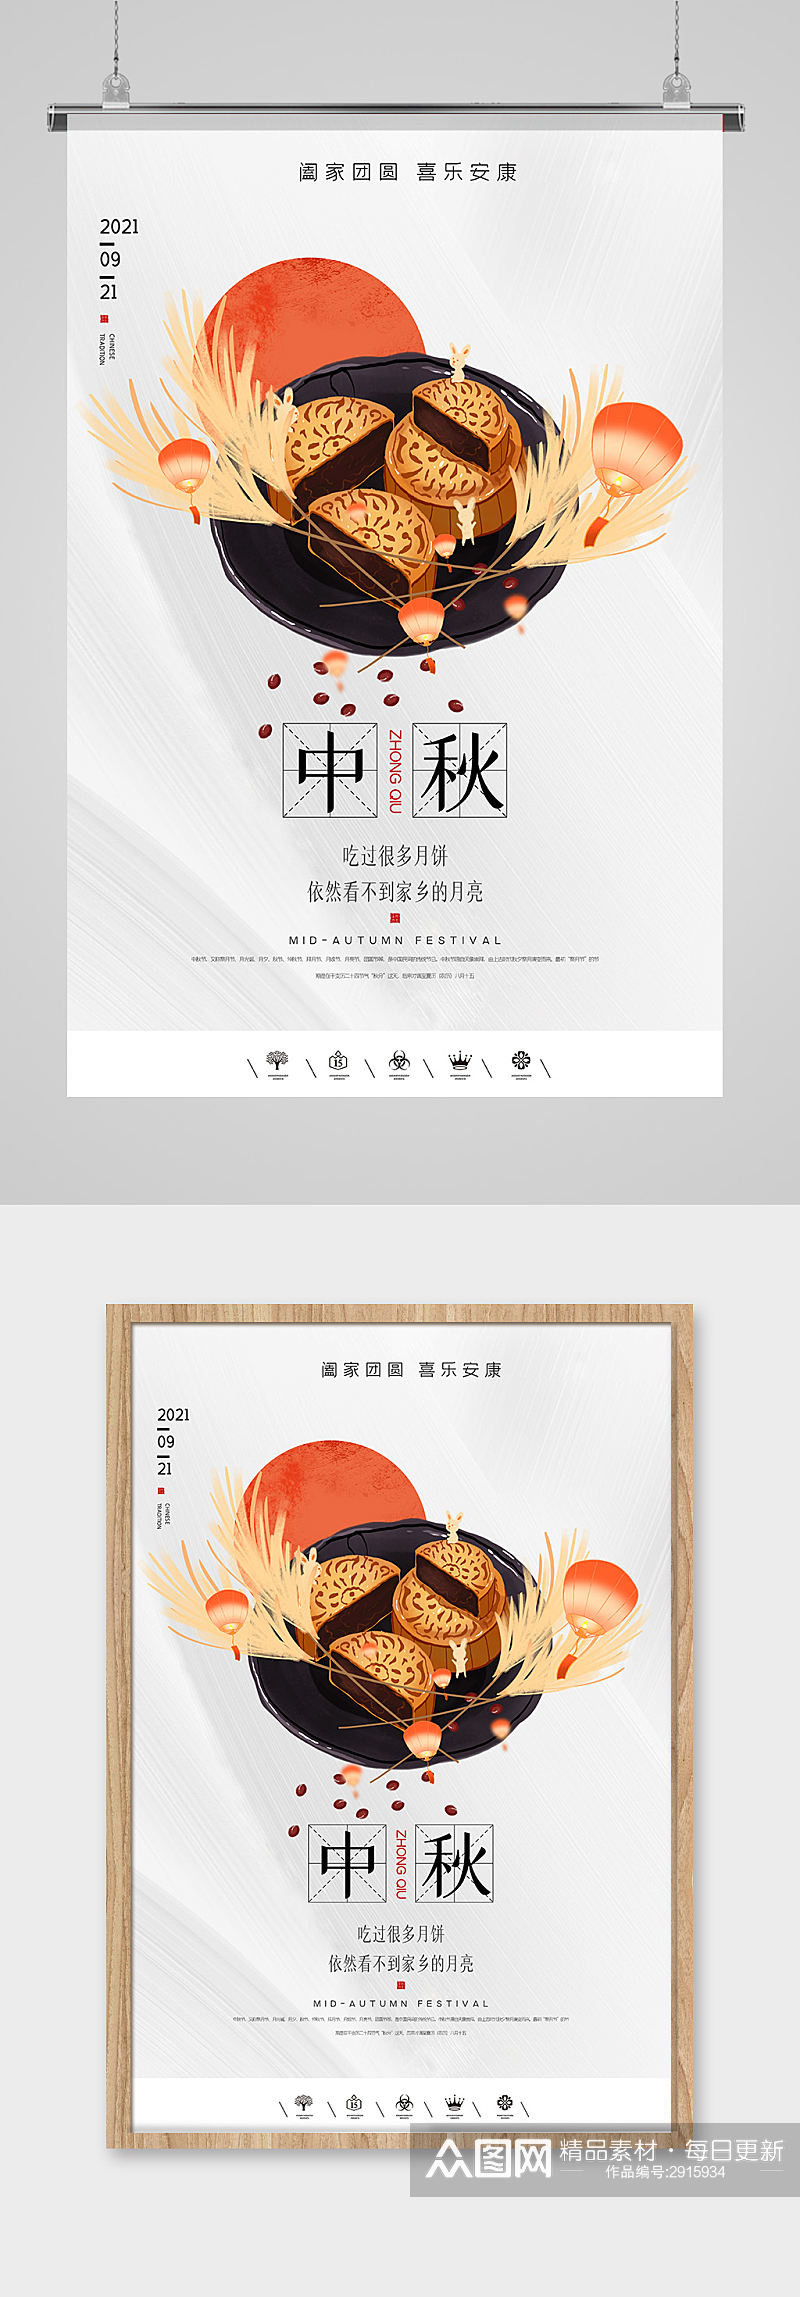 中国风简洁中秋海报设计素材